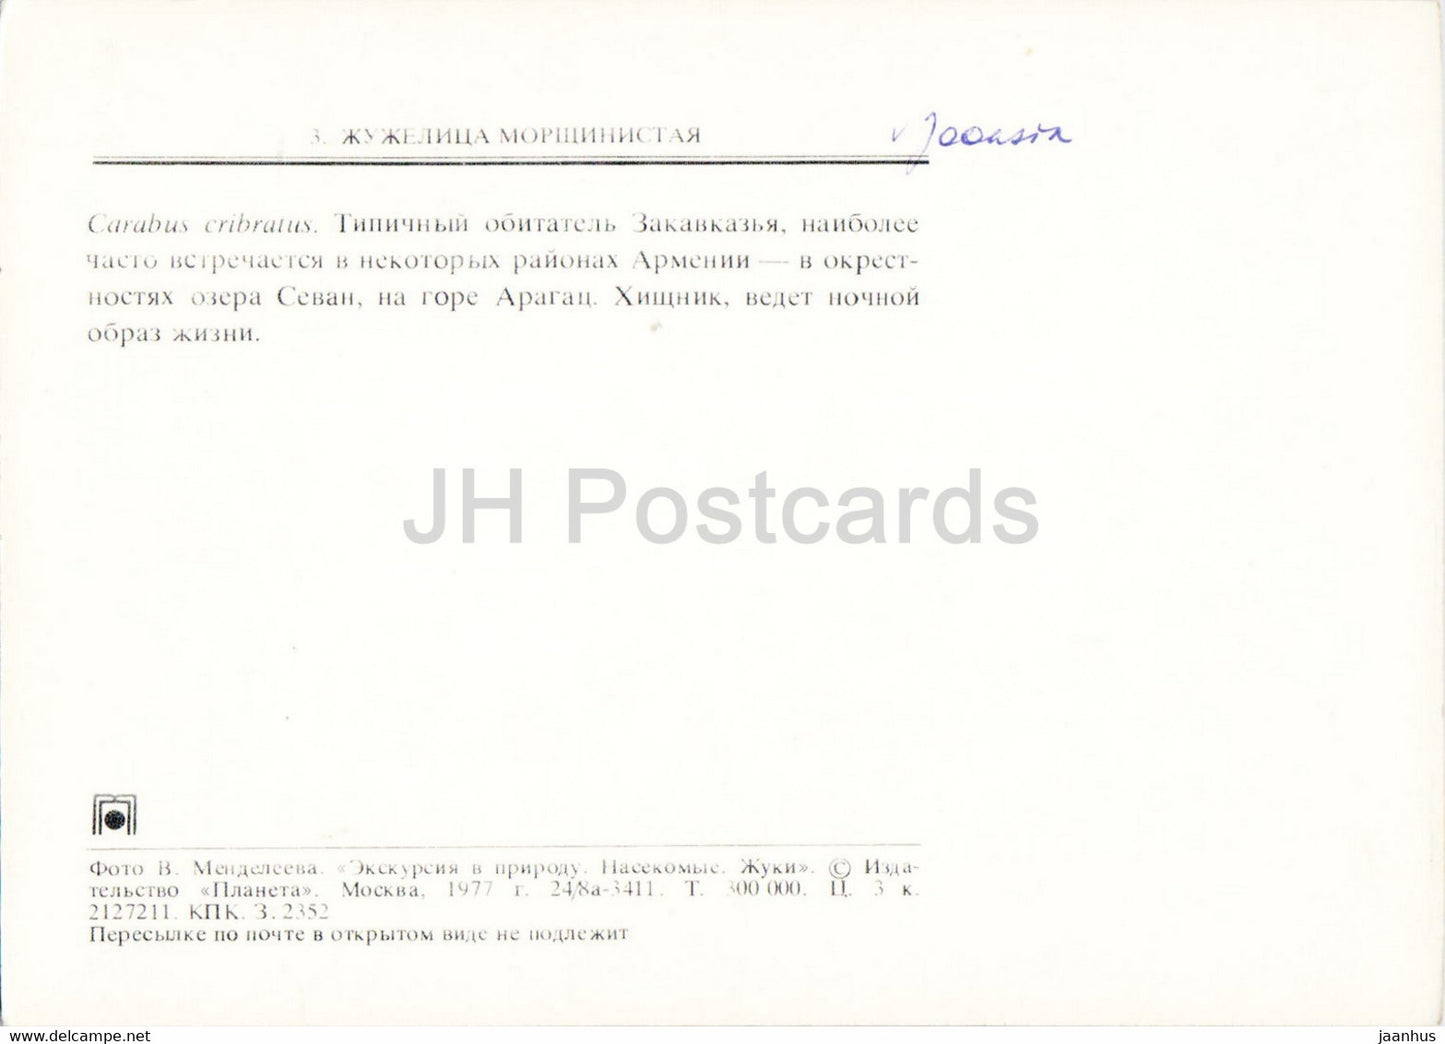 Carabus cribratus - insectes - 1977 - Russie URSS - inutilisé